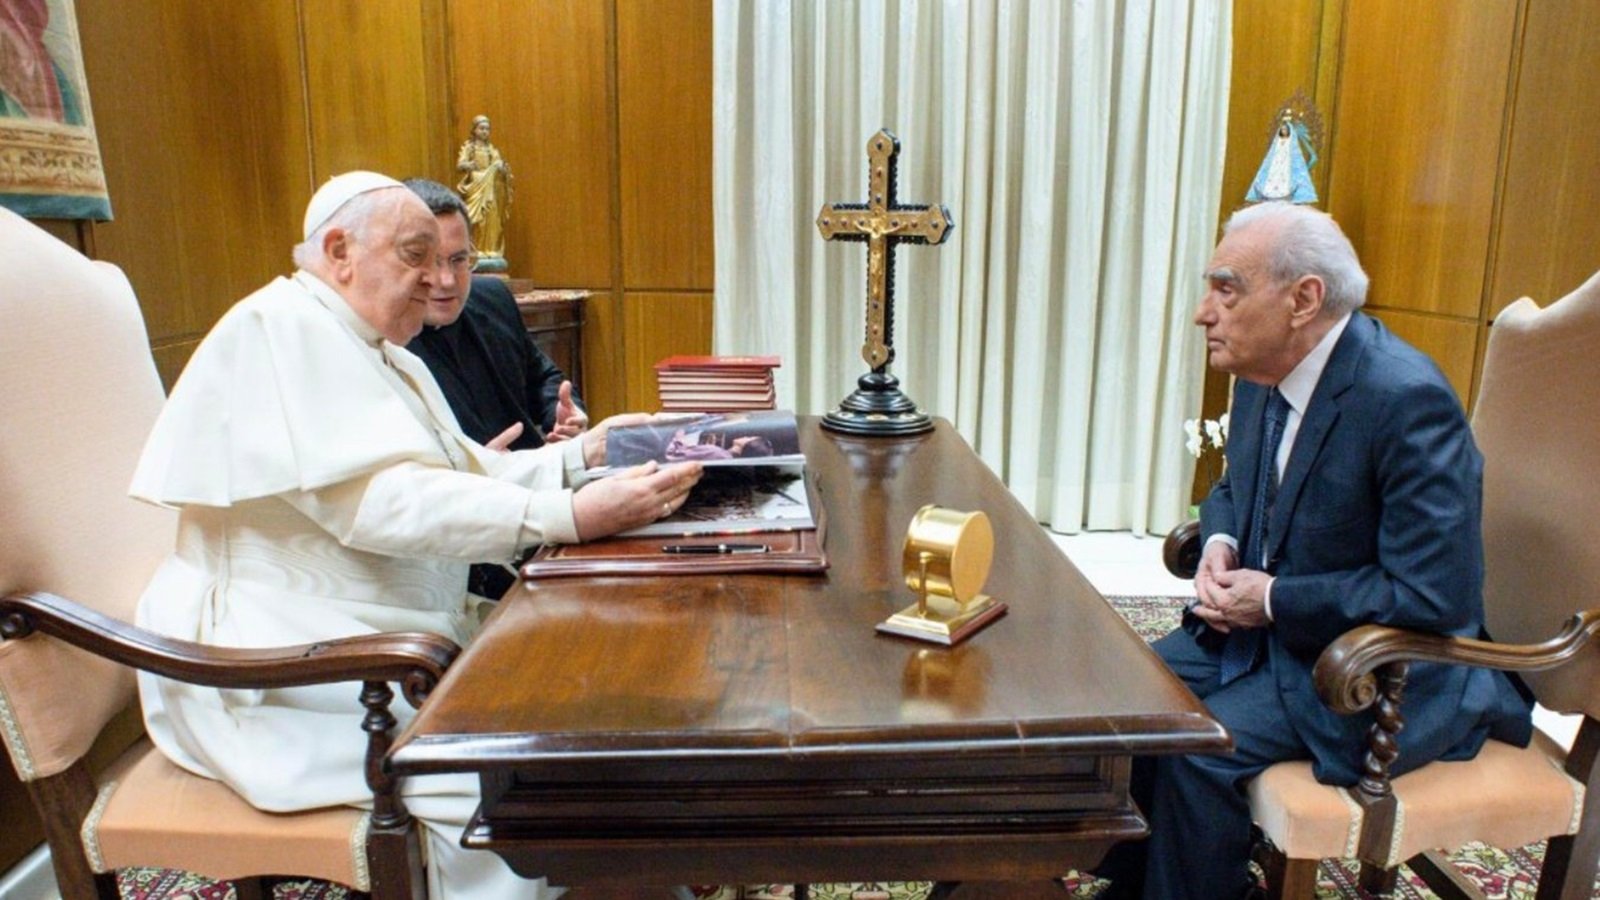 Martin Scorsese incontra Papa Francesco e gli regala un libro sul film Killers of the Flower Moon